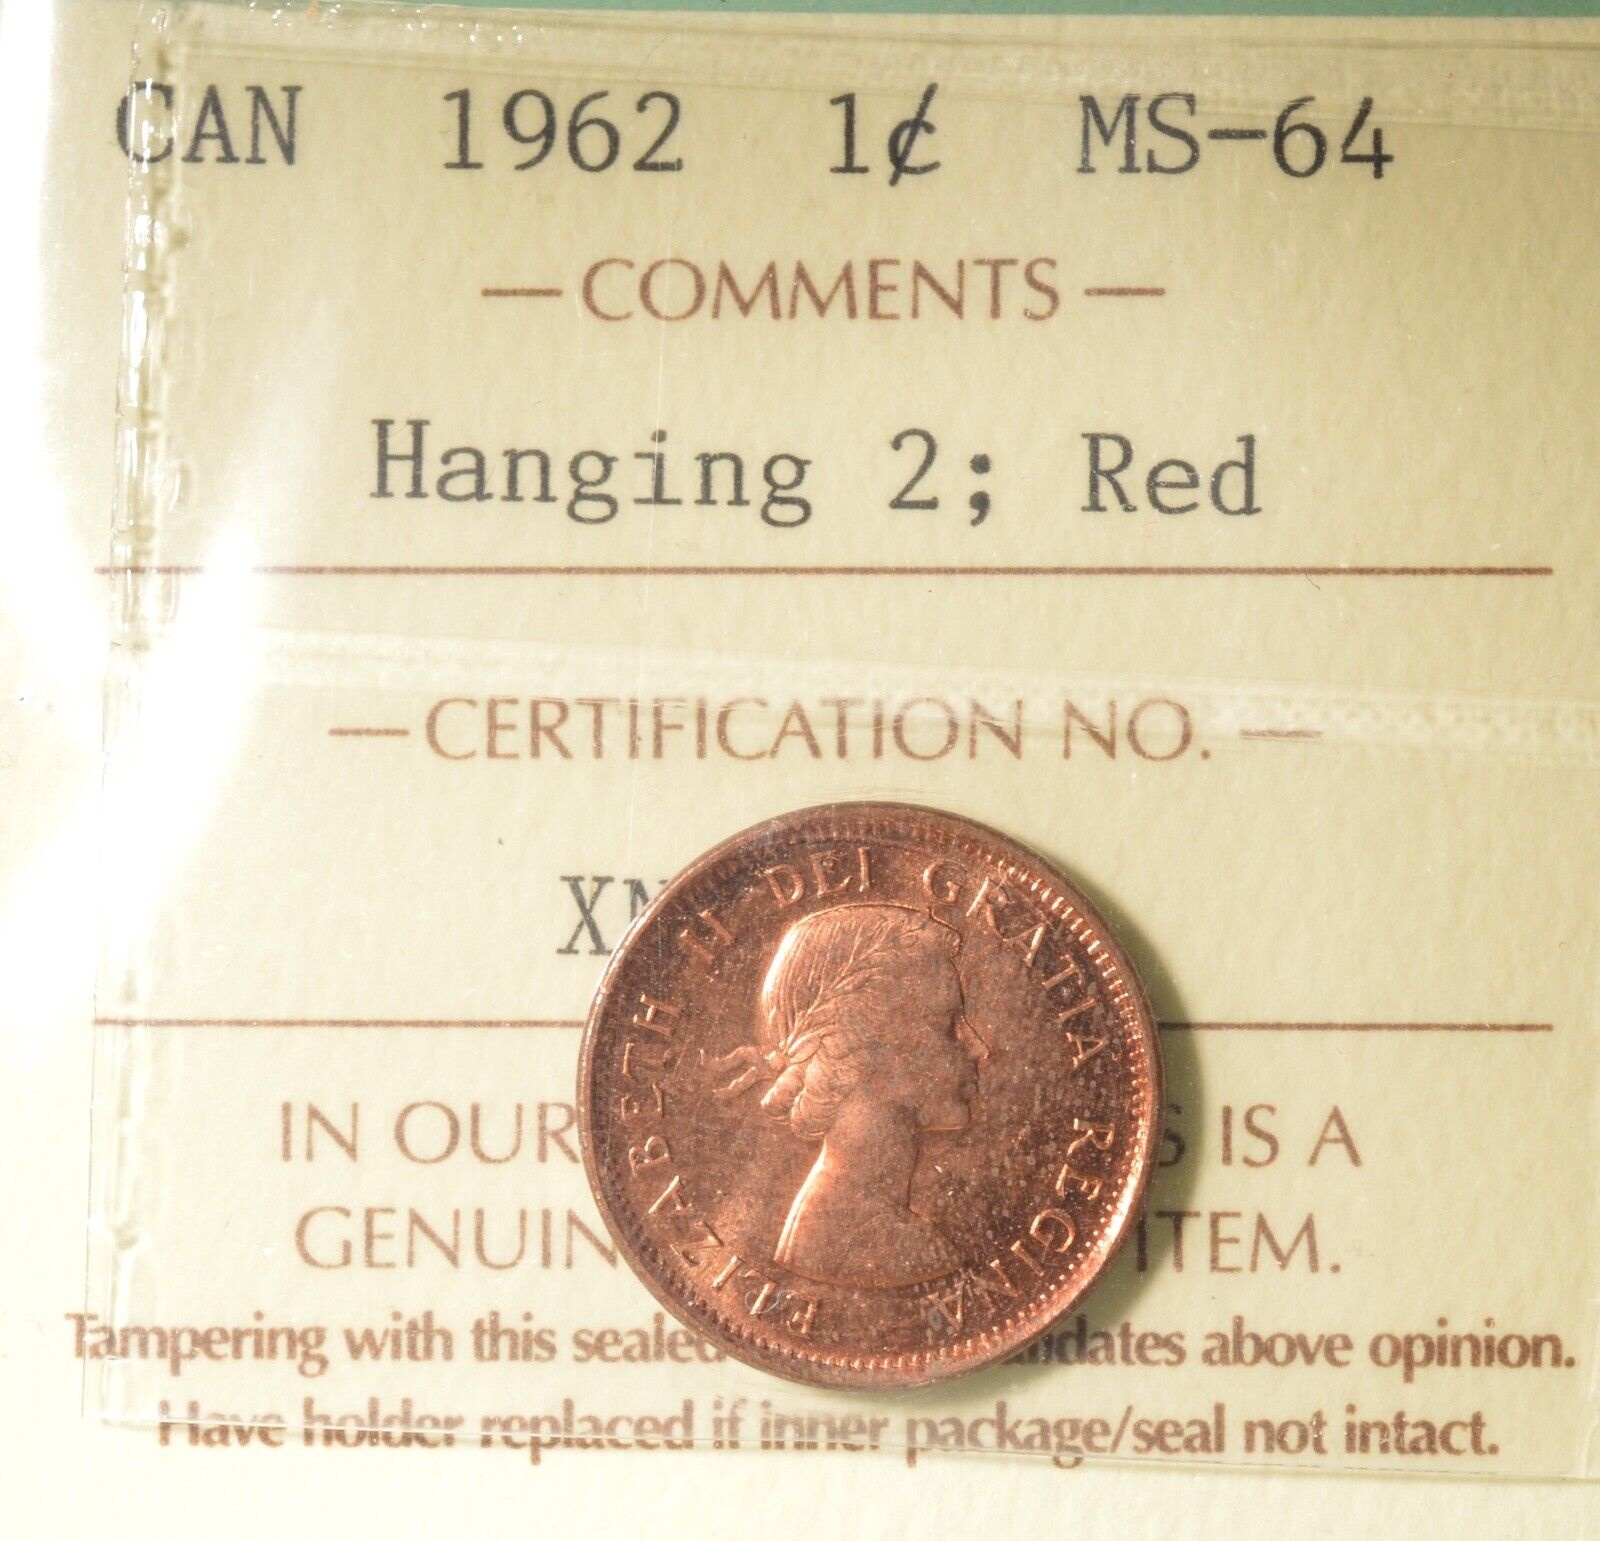  アンティークコイン コイン 金貨 銀貨  [送料無料] 1962 - Canada Penny - Hanging 2 - Graded - ICCS MS64 RED 送料無料カード決済可能